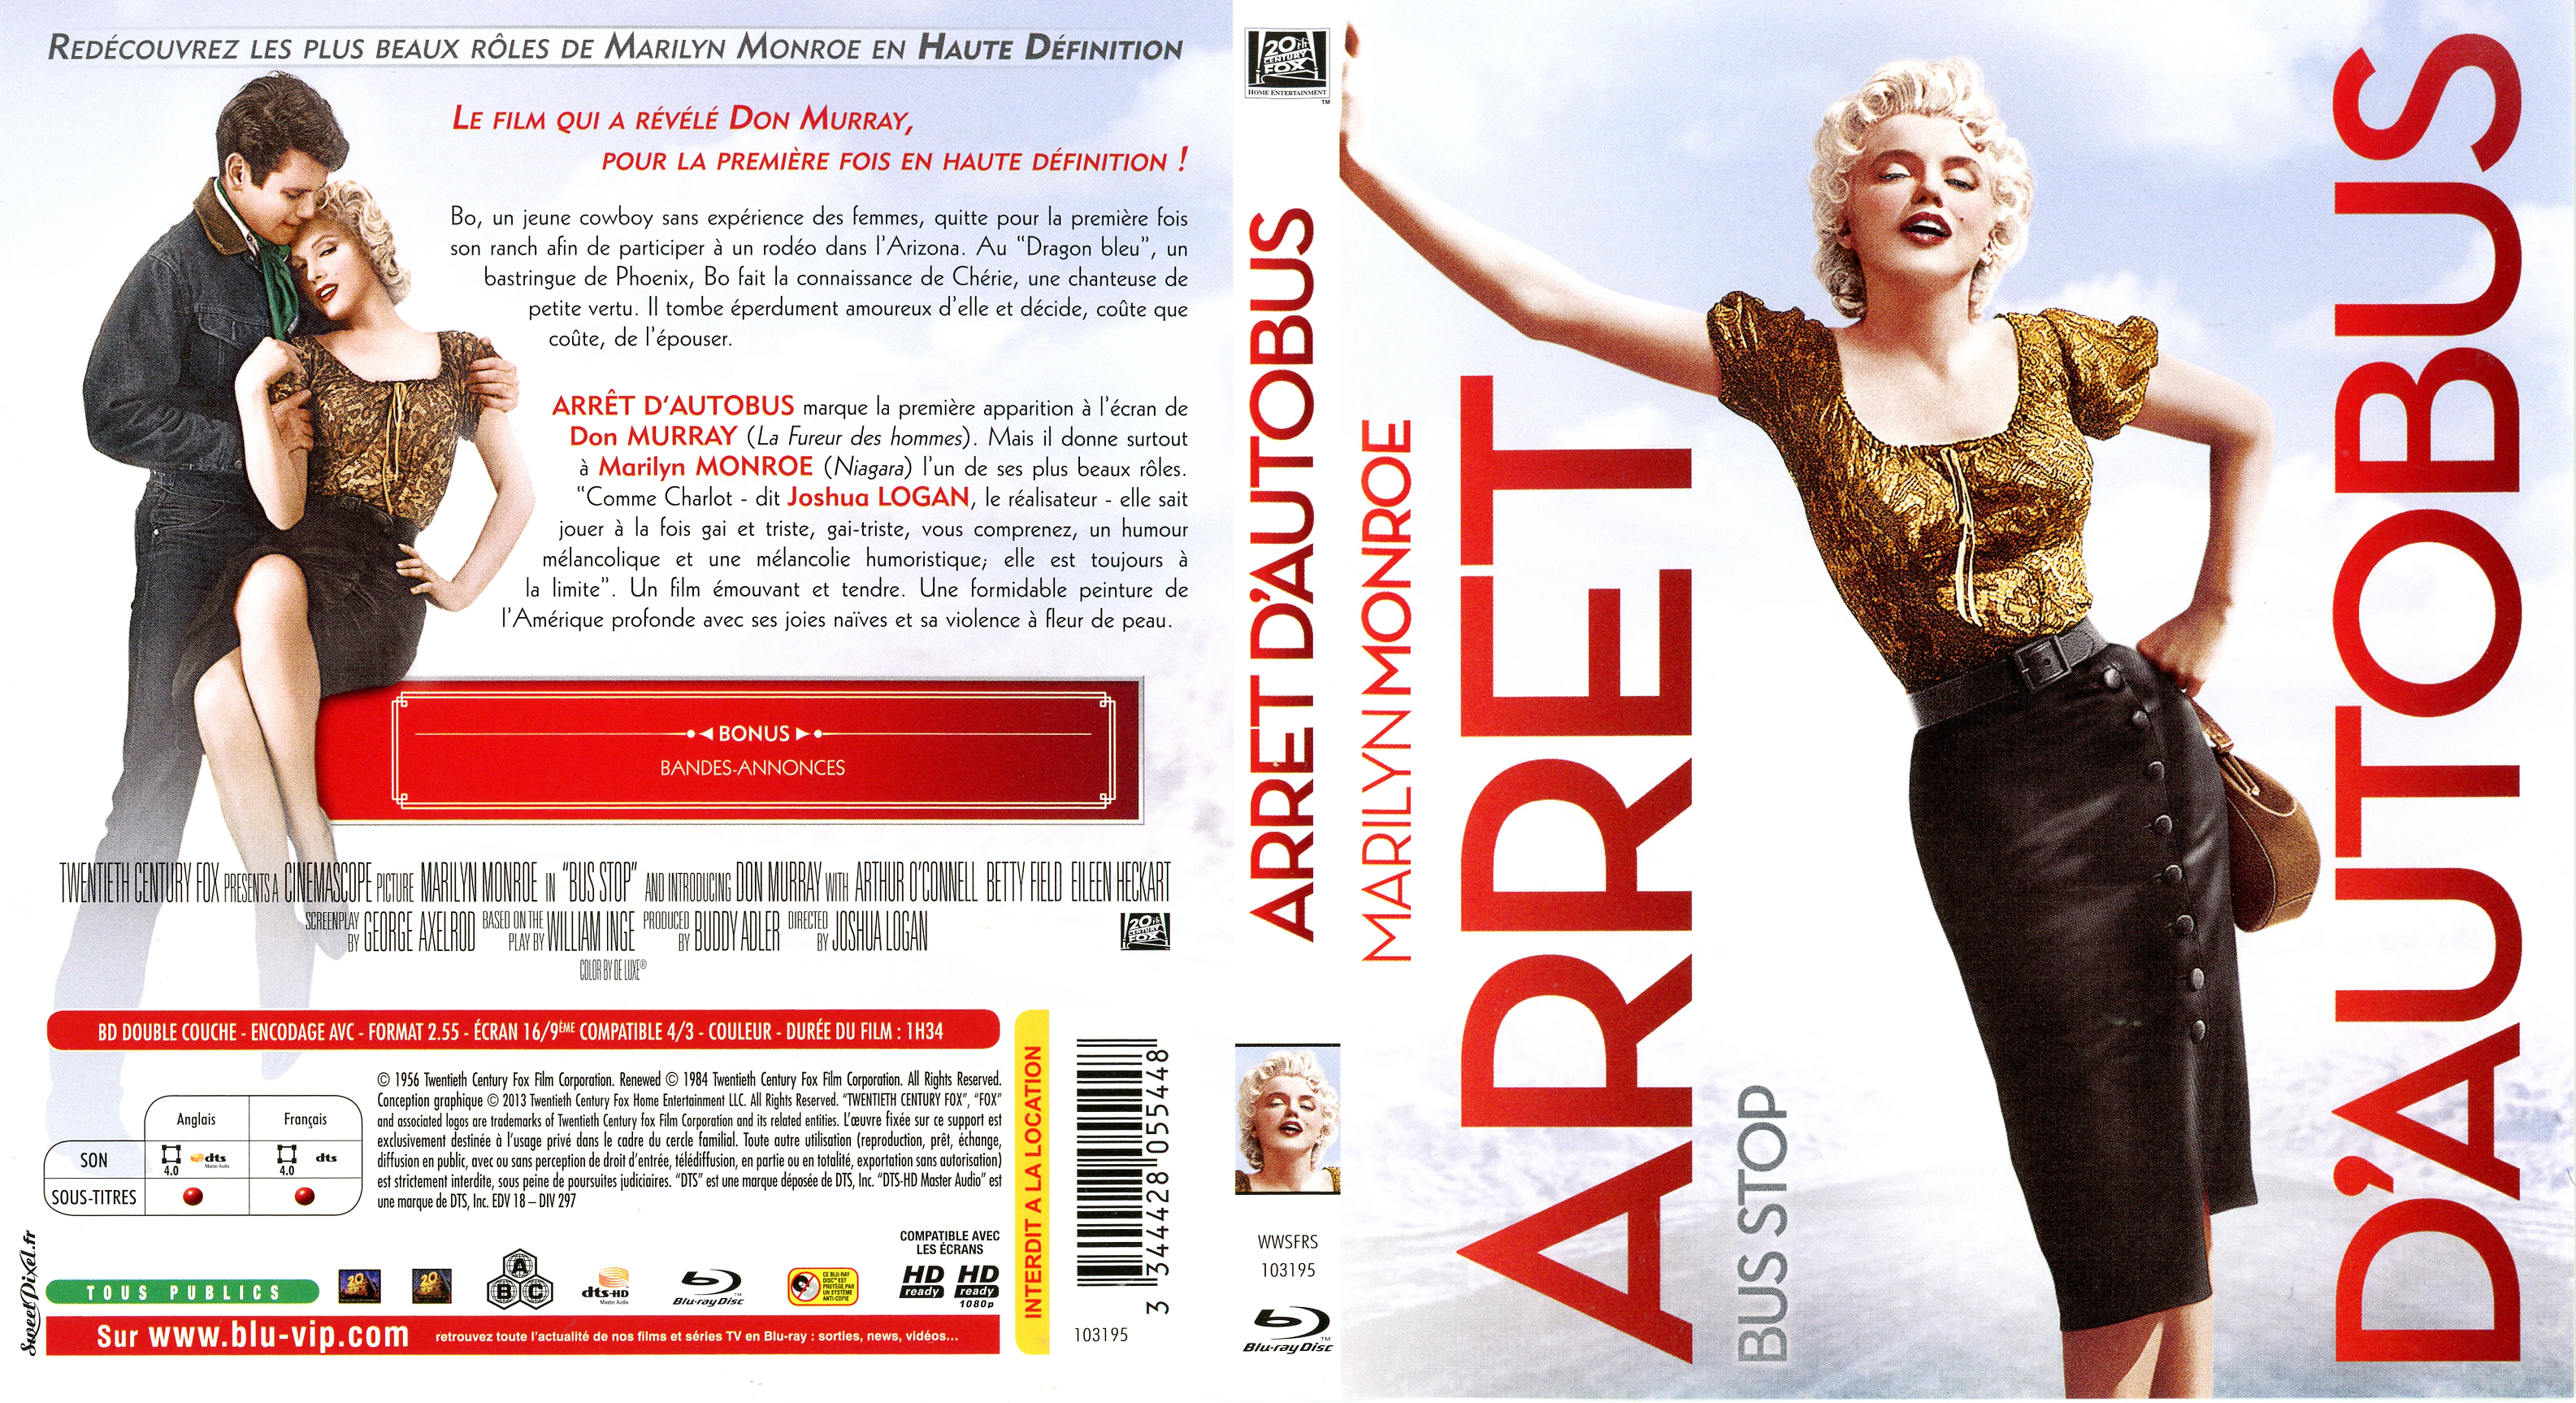 Jaquette DVD Arret d